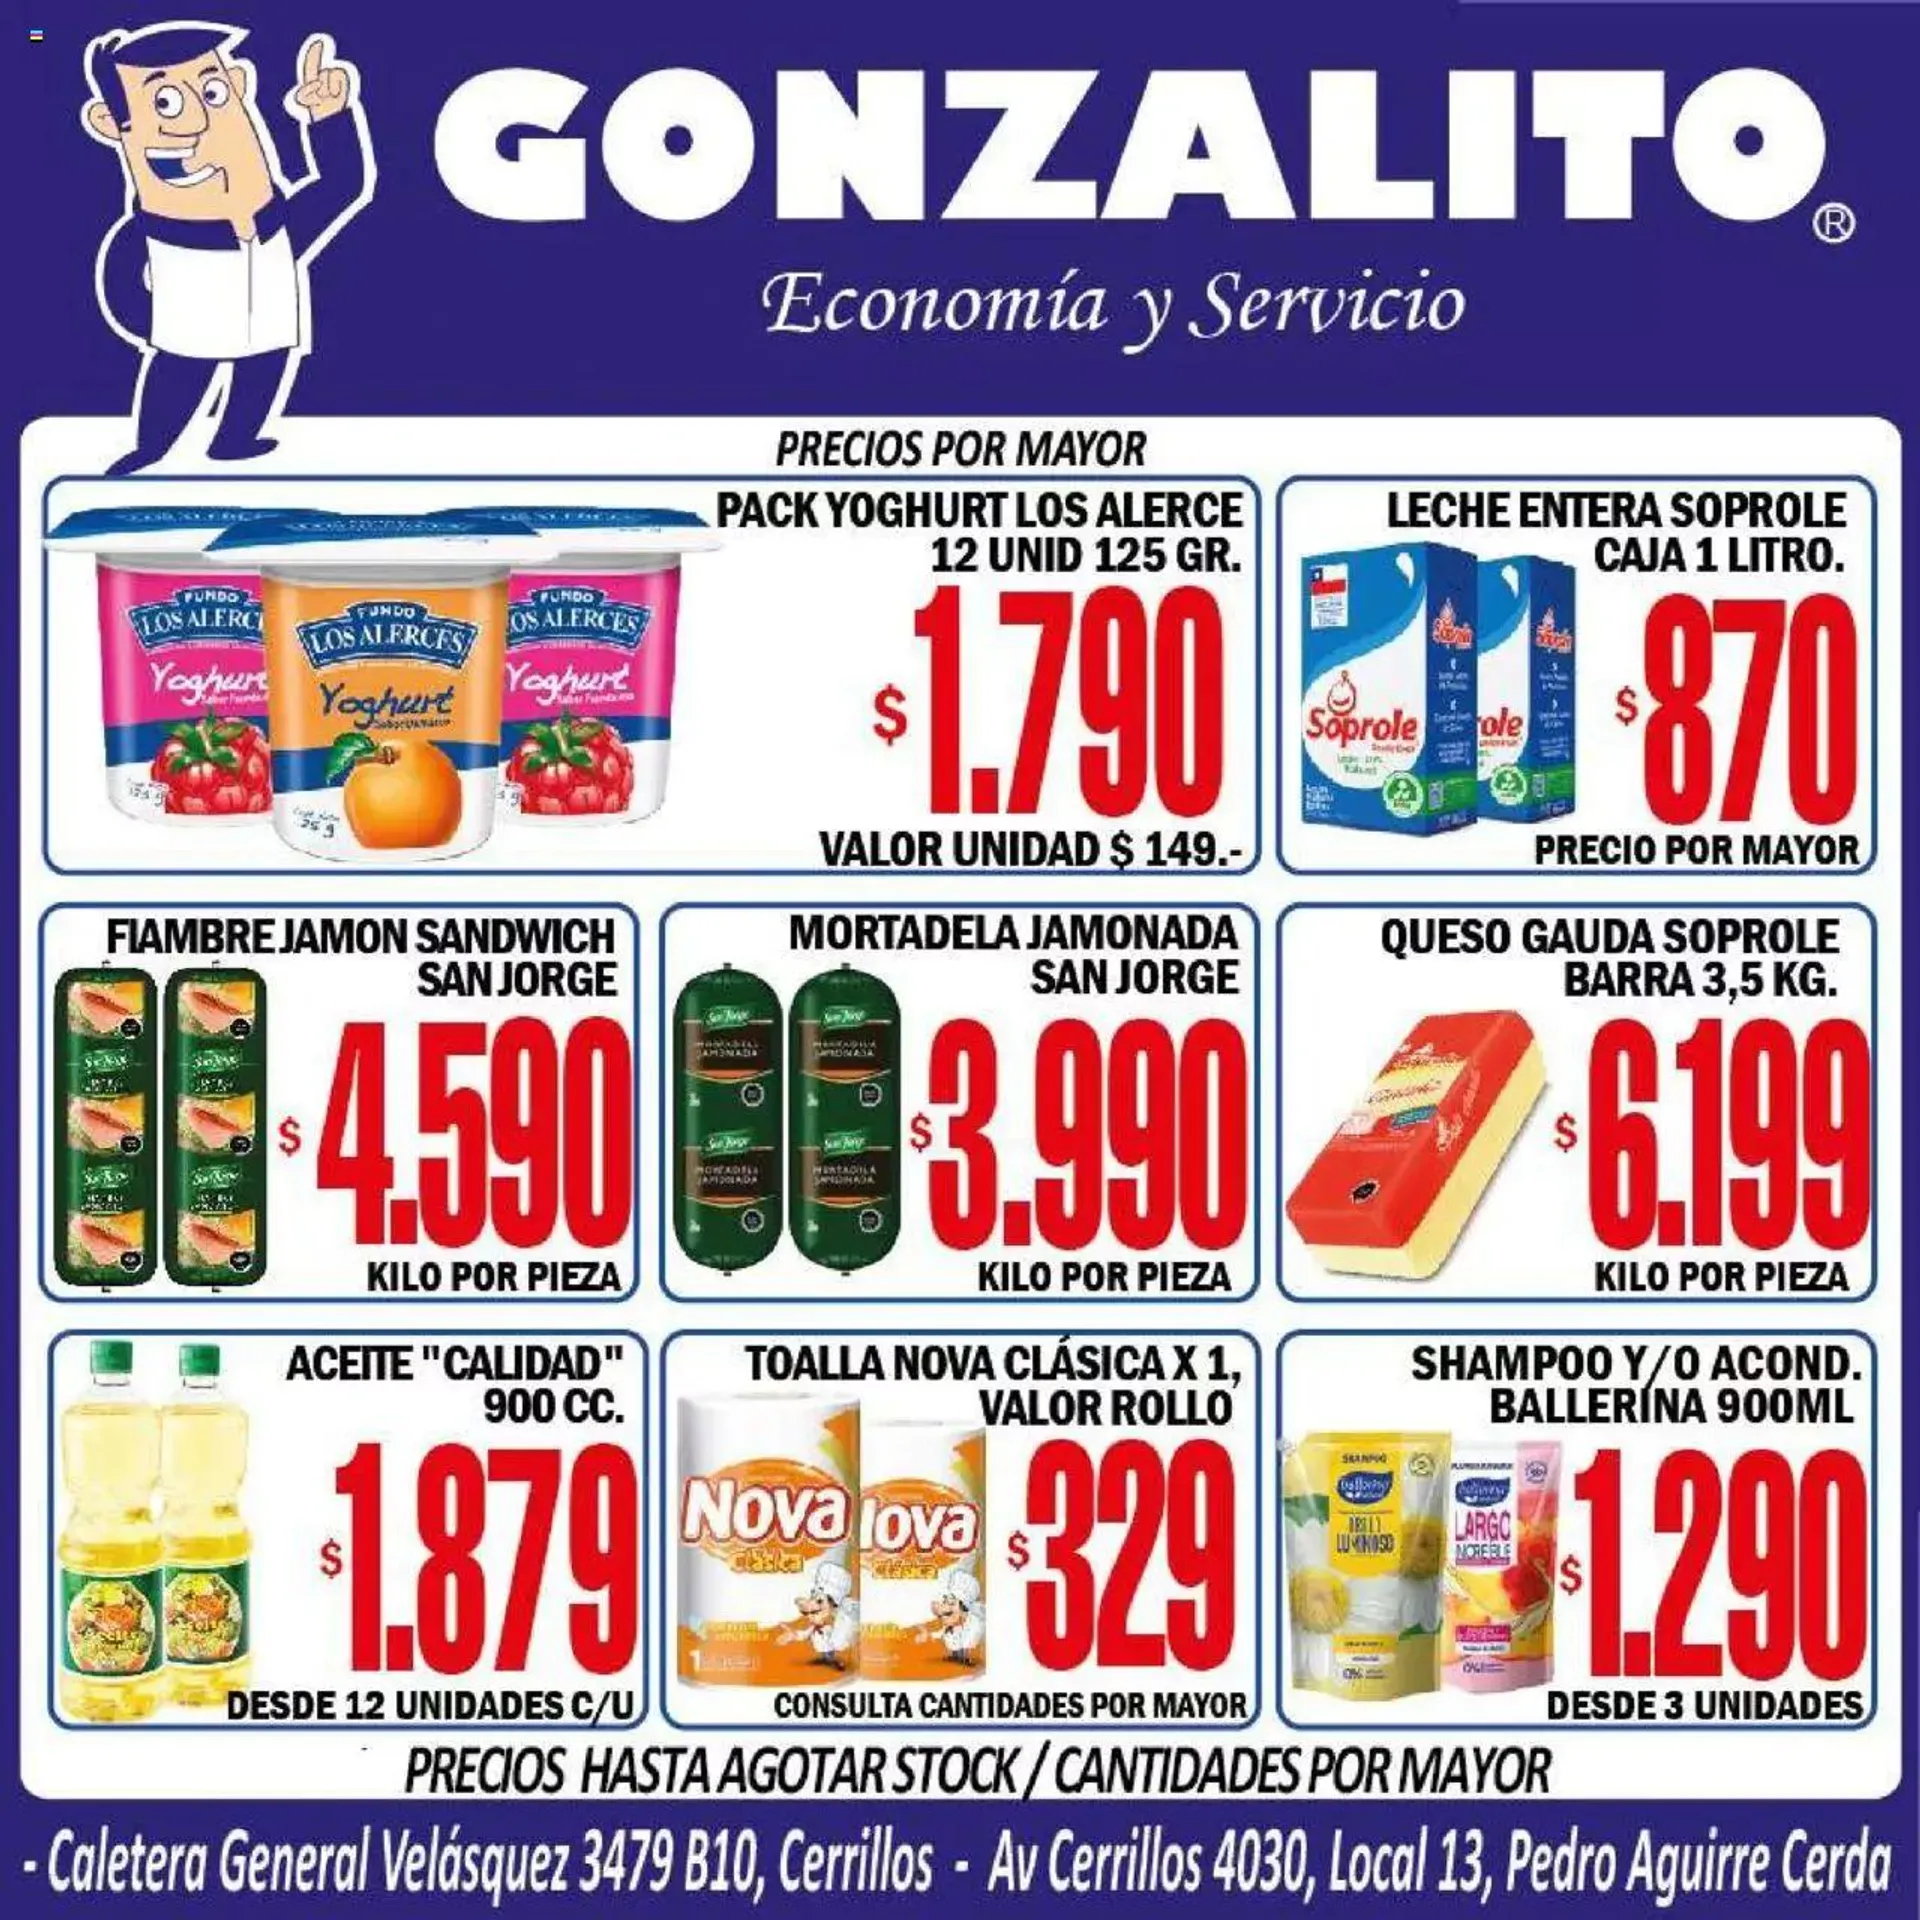 La Oferta - Gonzalito - 0